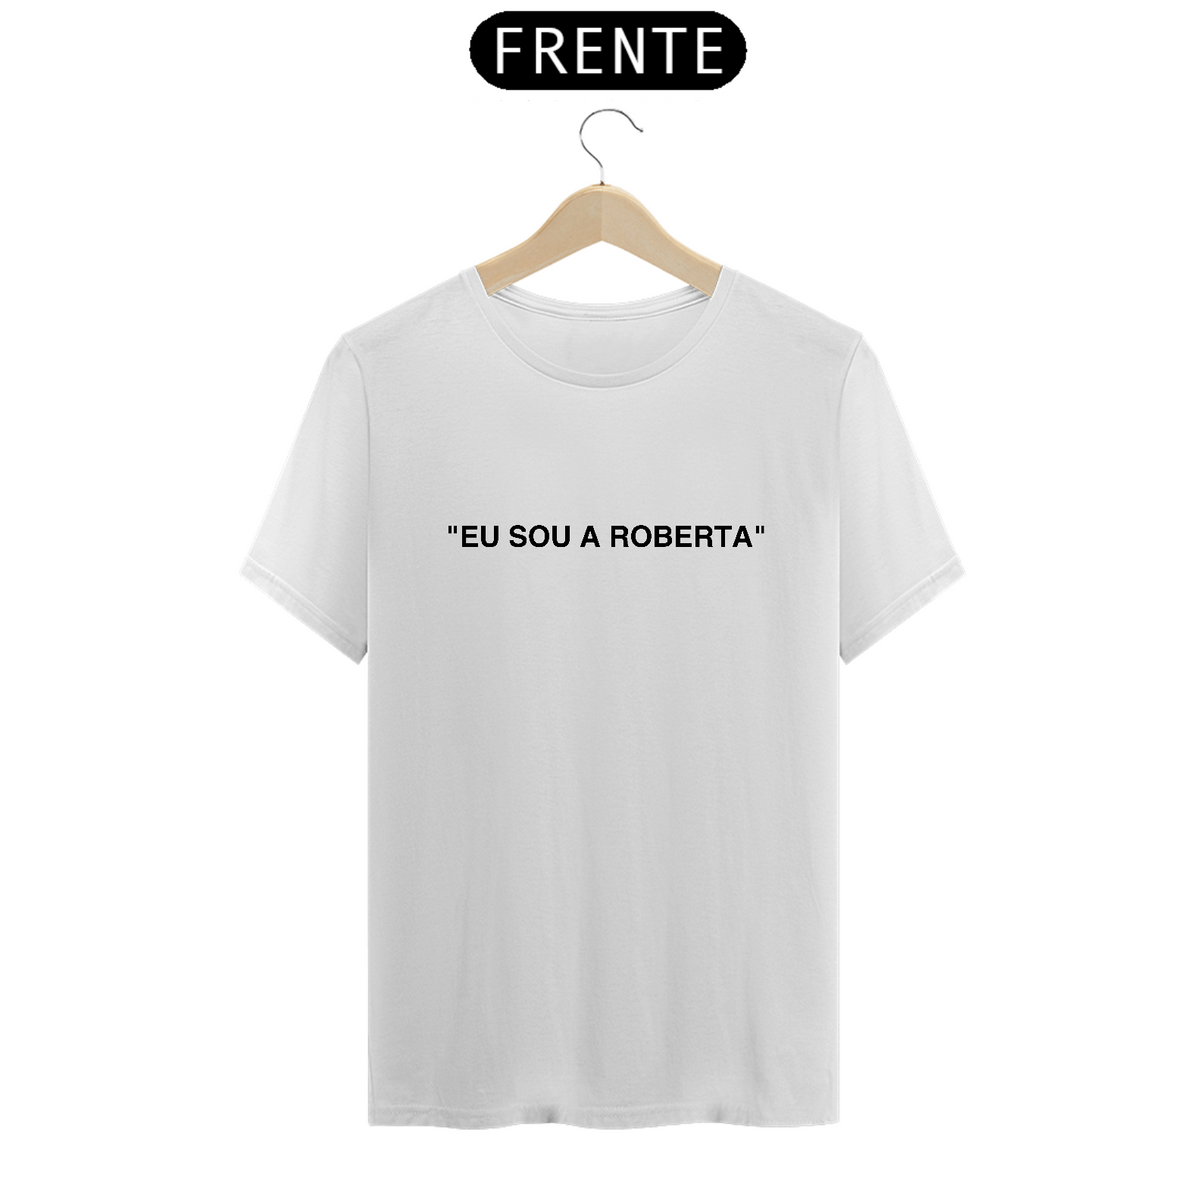 Nome do produto: Camiseta Unissex - RBD Eu sou a Roberta Insp. Off White